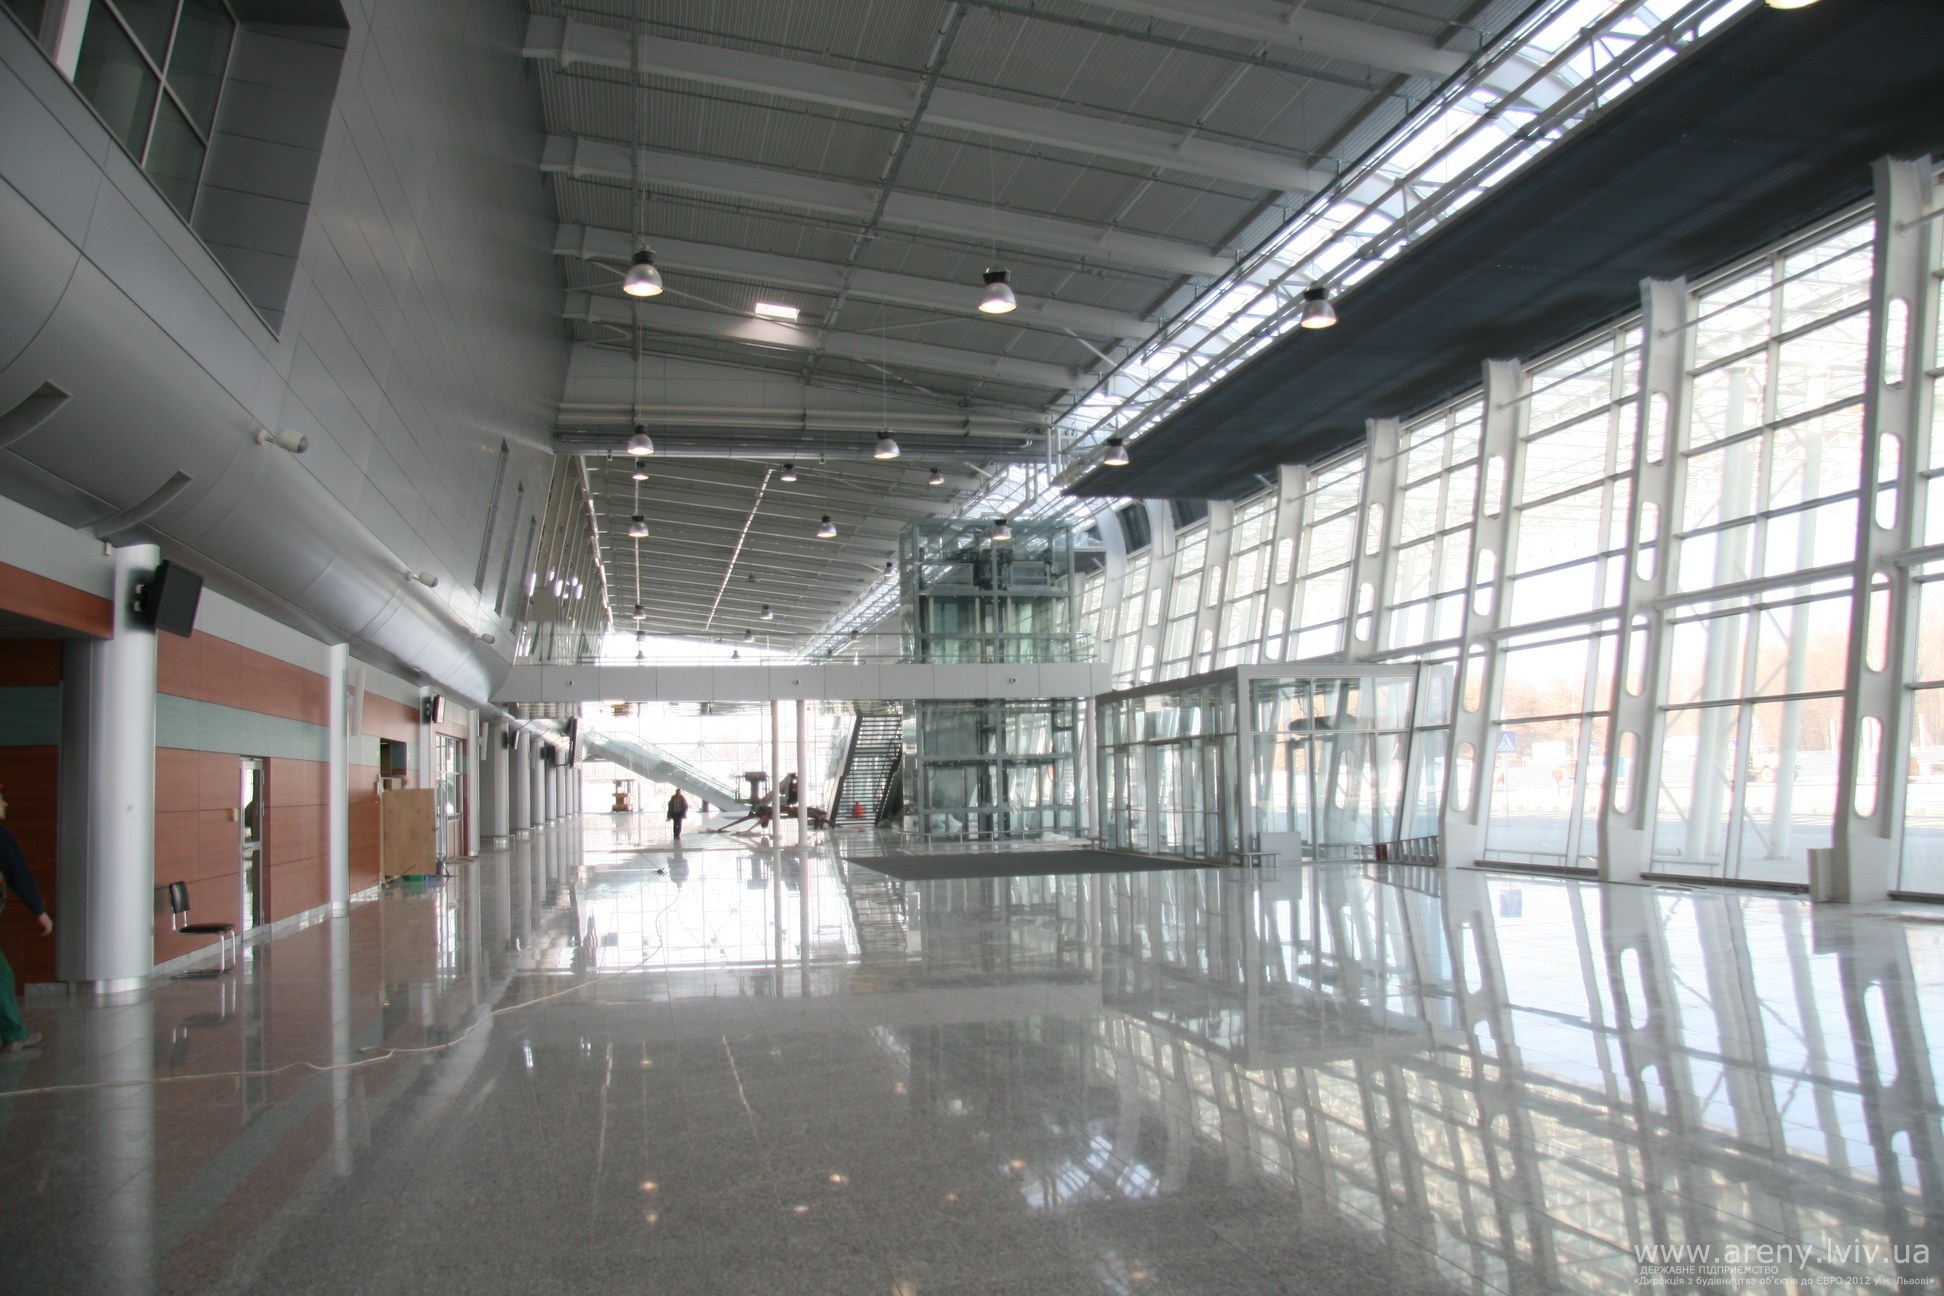 Из-за сообщения о заминировании эвакуировали сотрудников и пассажиров ГП „Международный аэропорт „Львов” им. Даниила Галицкого”.